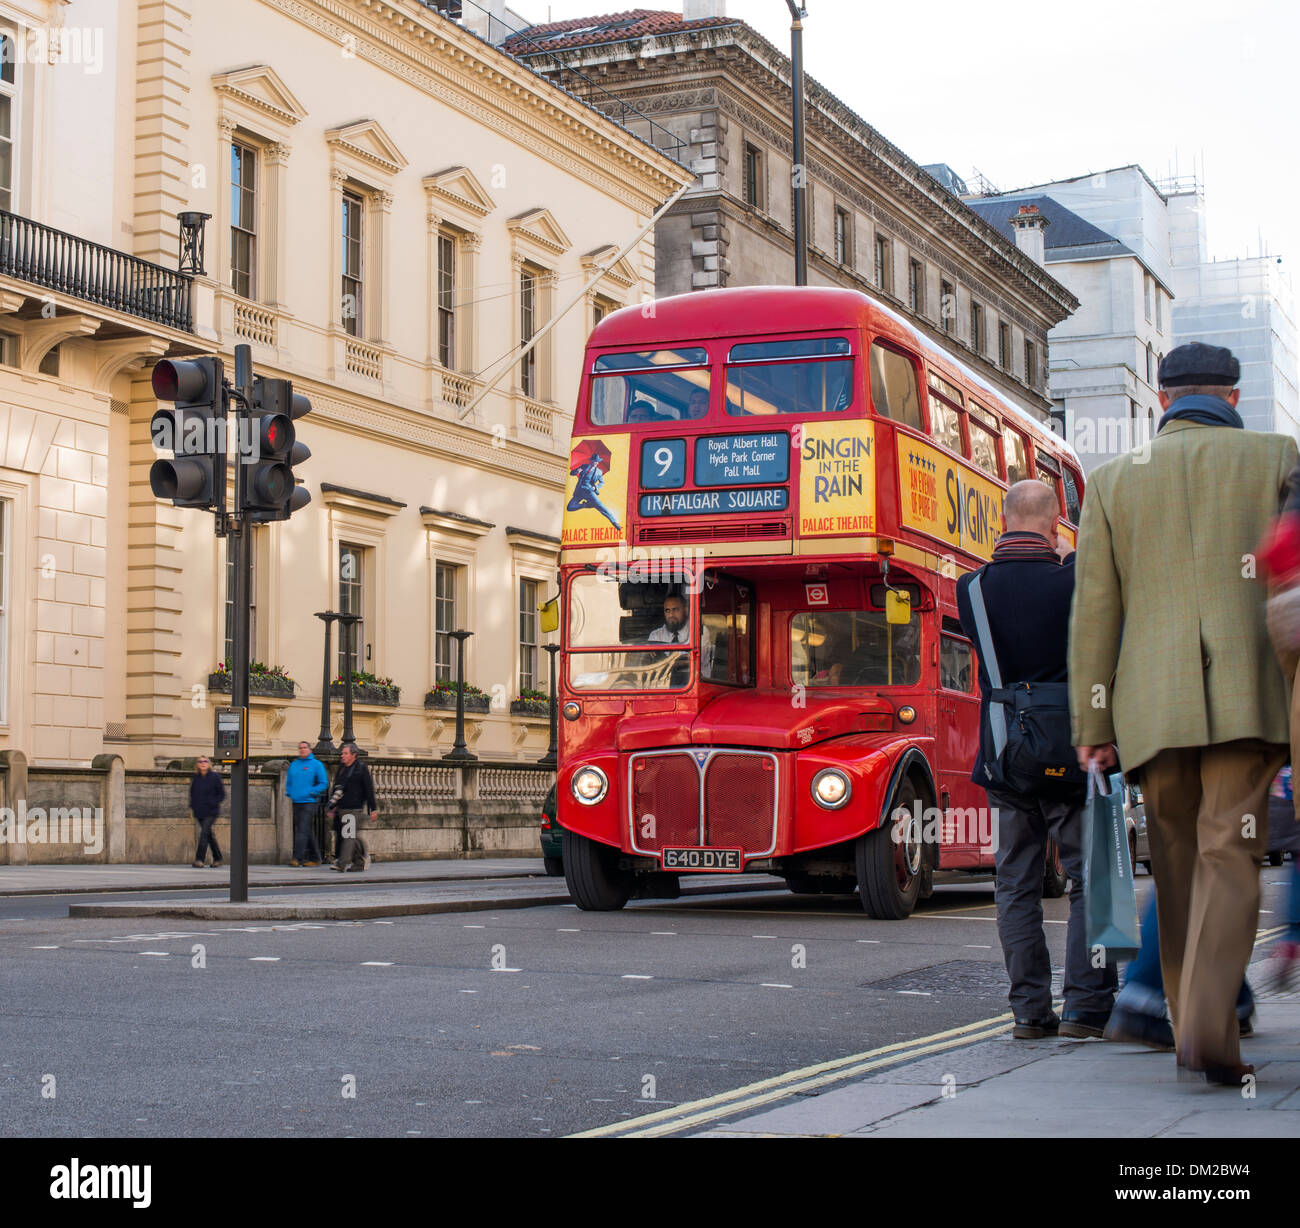 London tour bus touristique rouge. Bus d'époque Banque D'Images